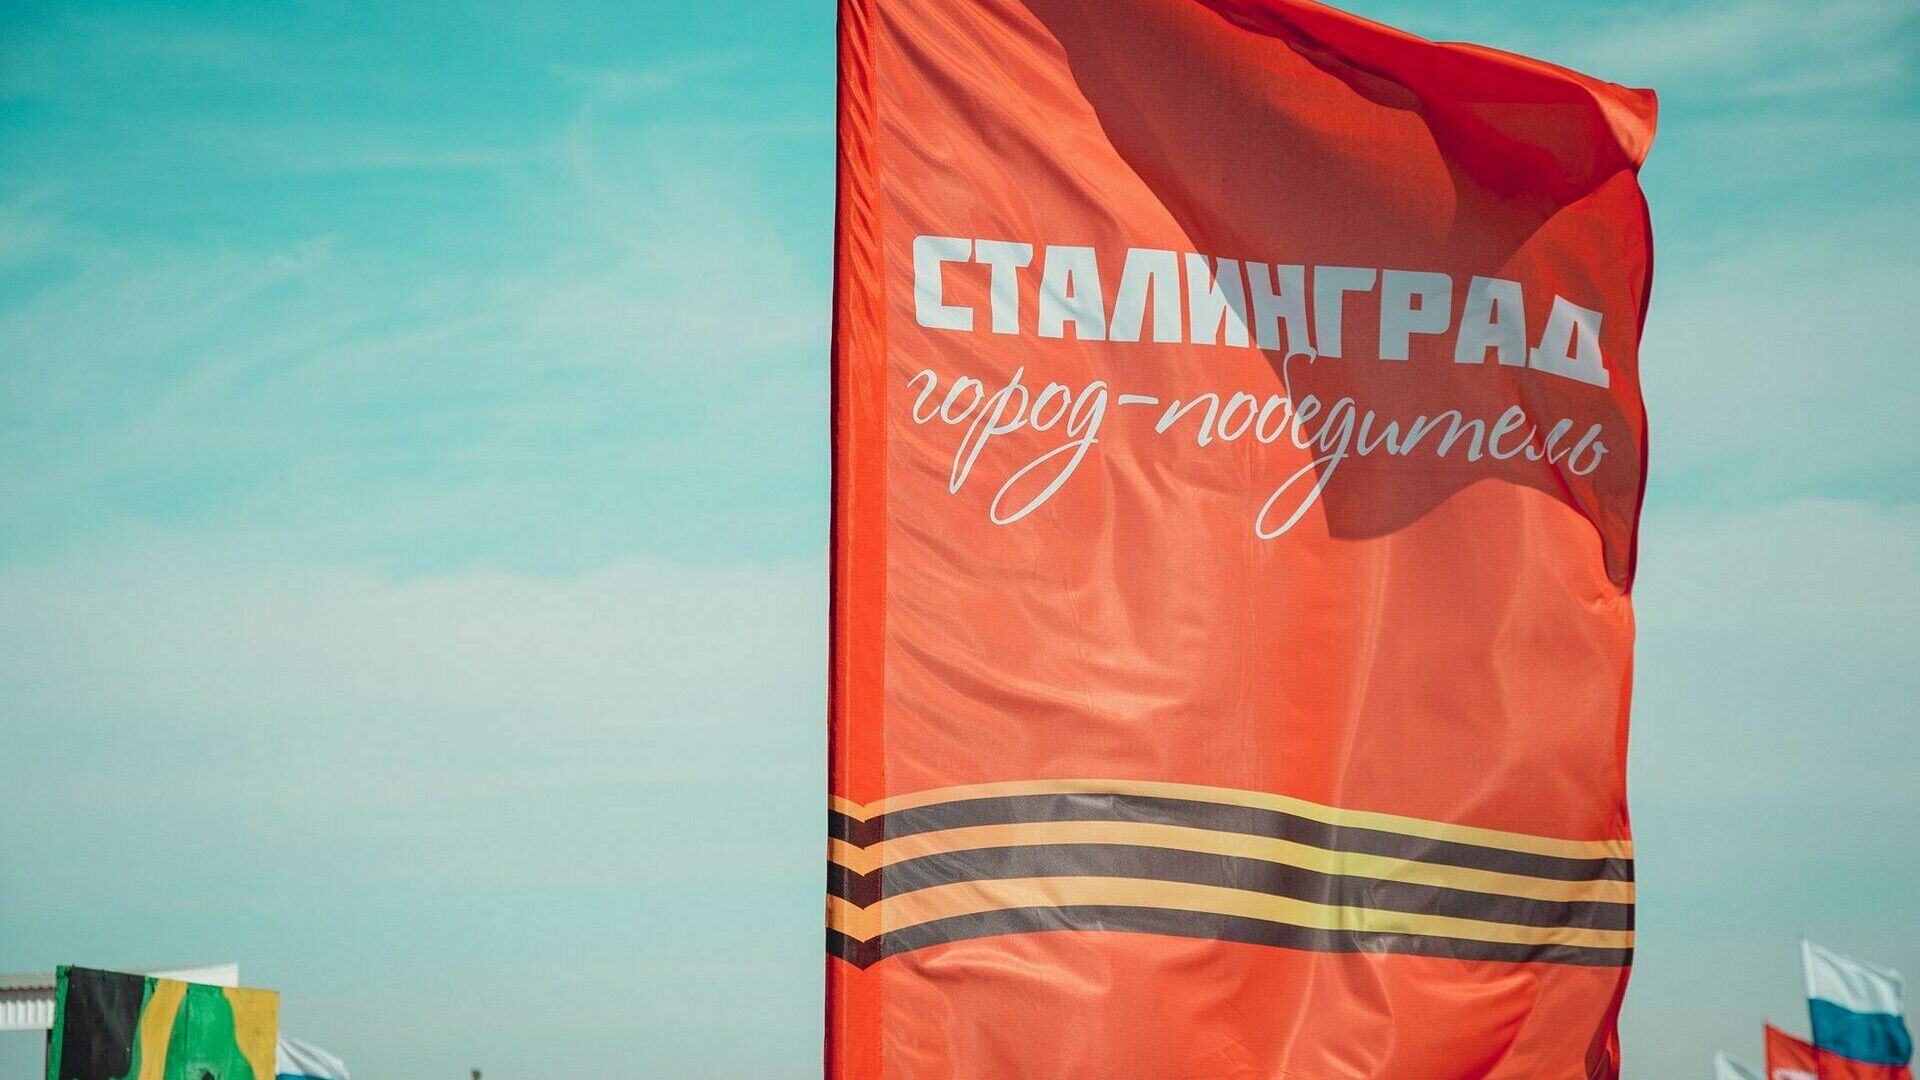 Переименование в Сталинград и спам-атака на депутатов интриговали волгоградцев